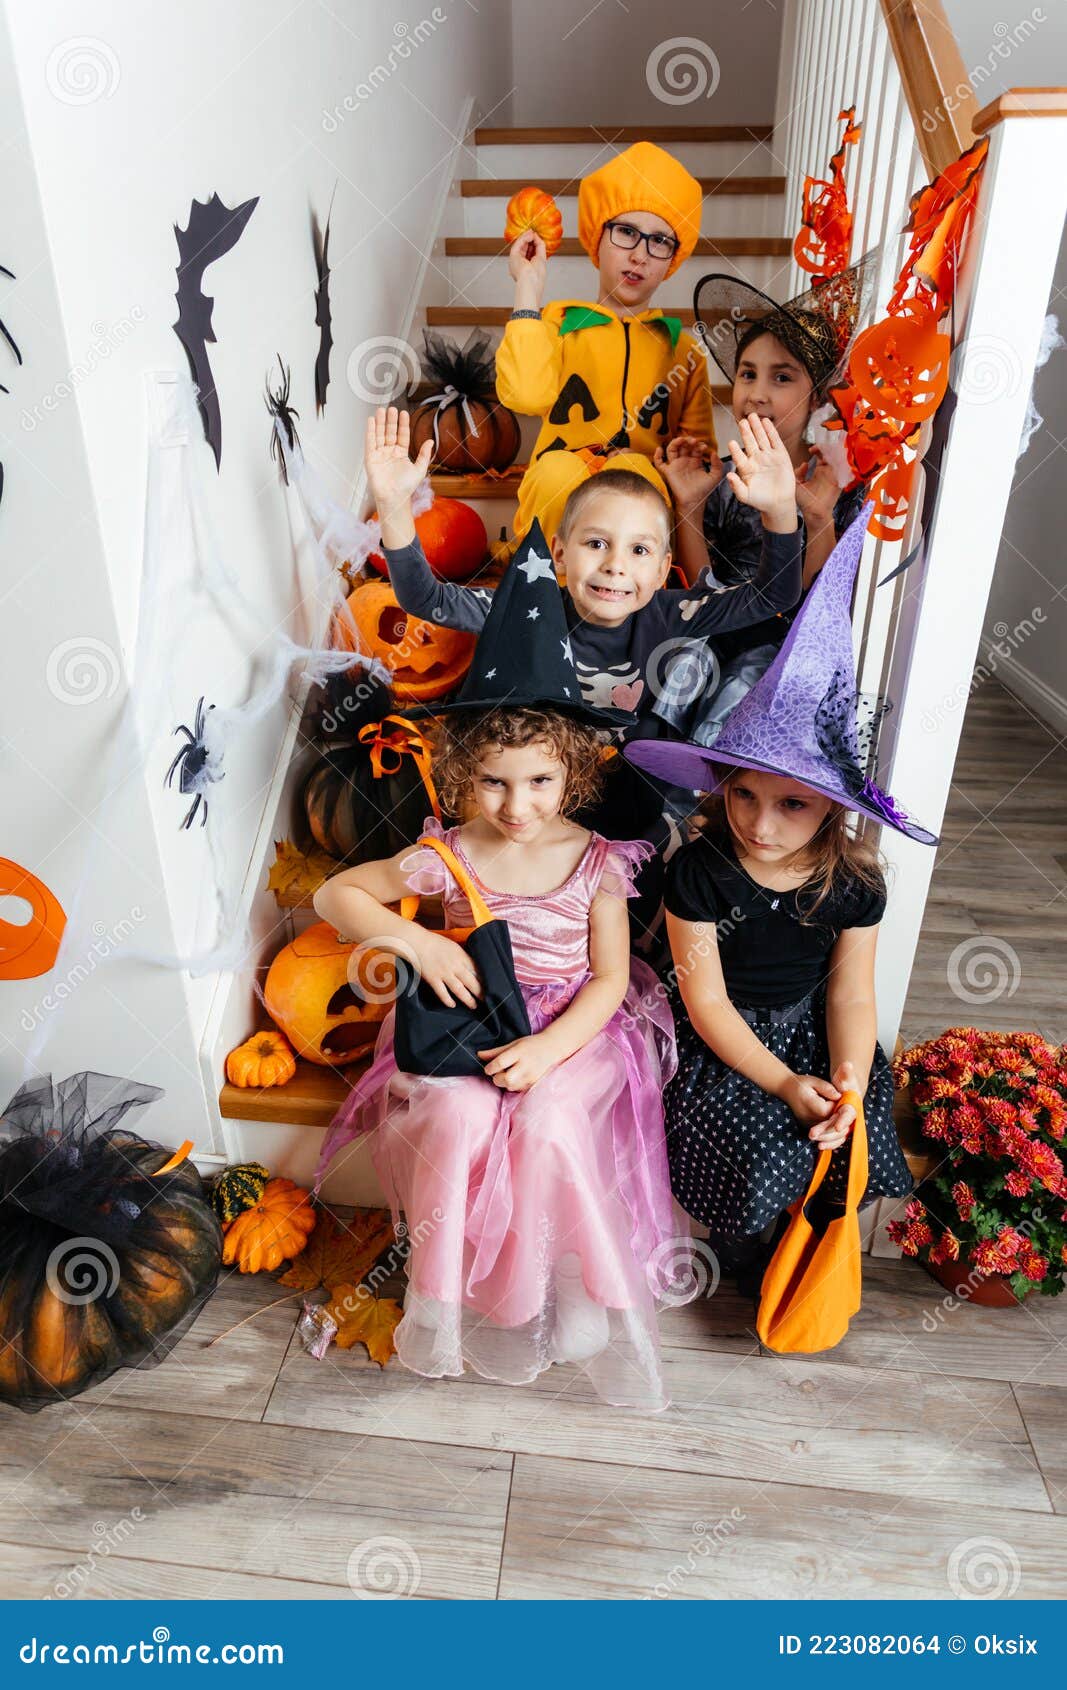 Хэллоуин (хеллоуин), 31 октября - Праздник монстров и нечистой силы «Хэллоуин»